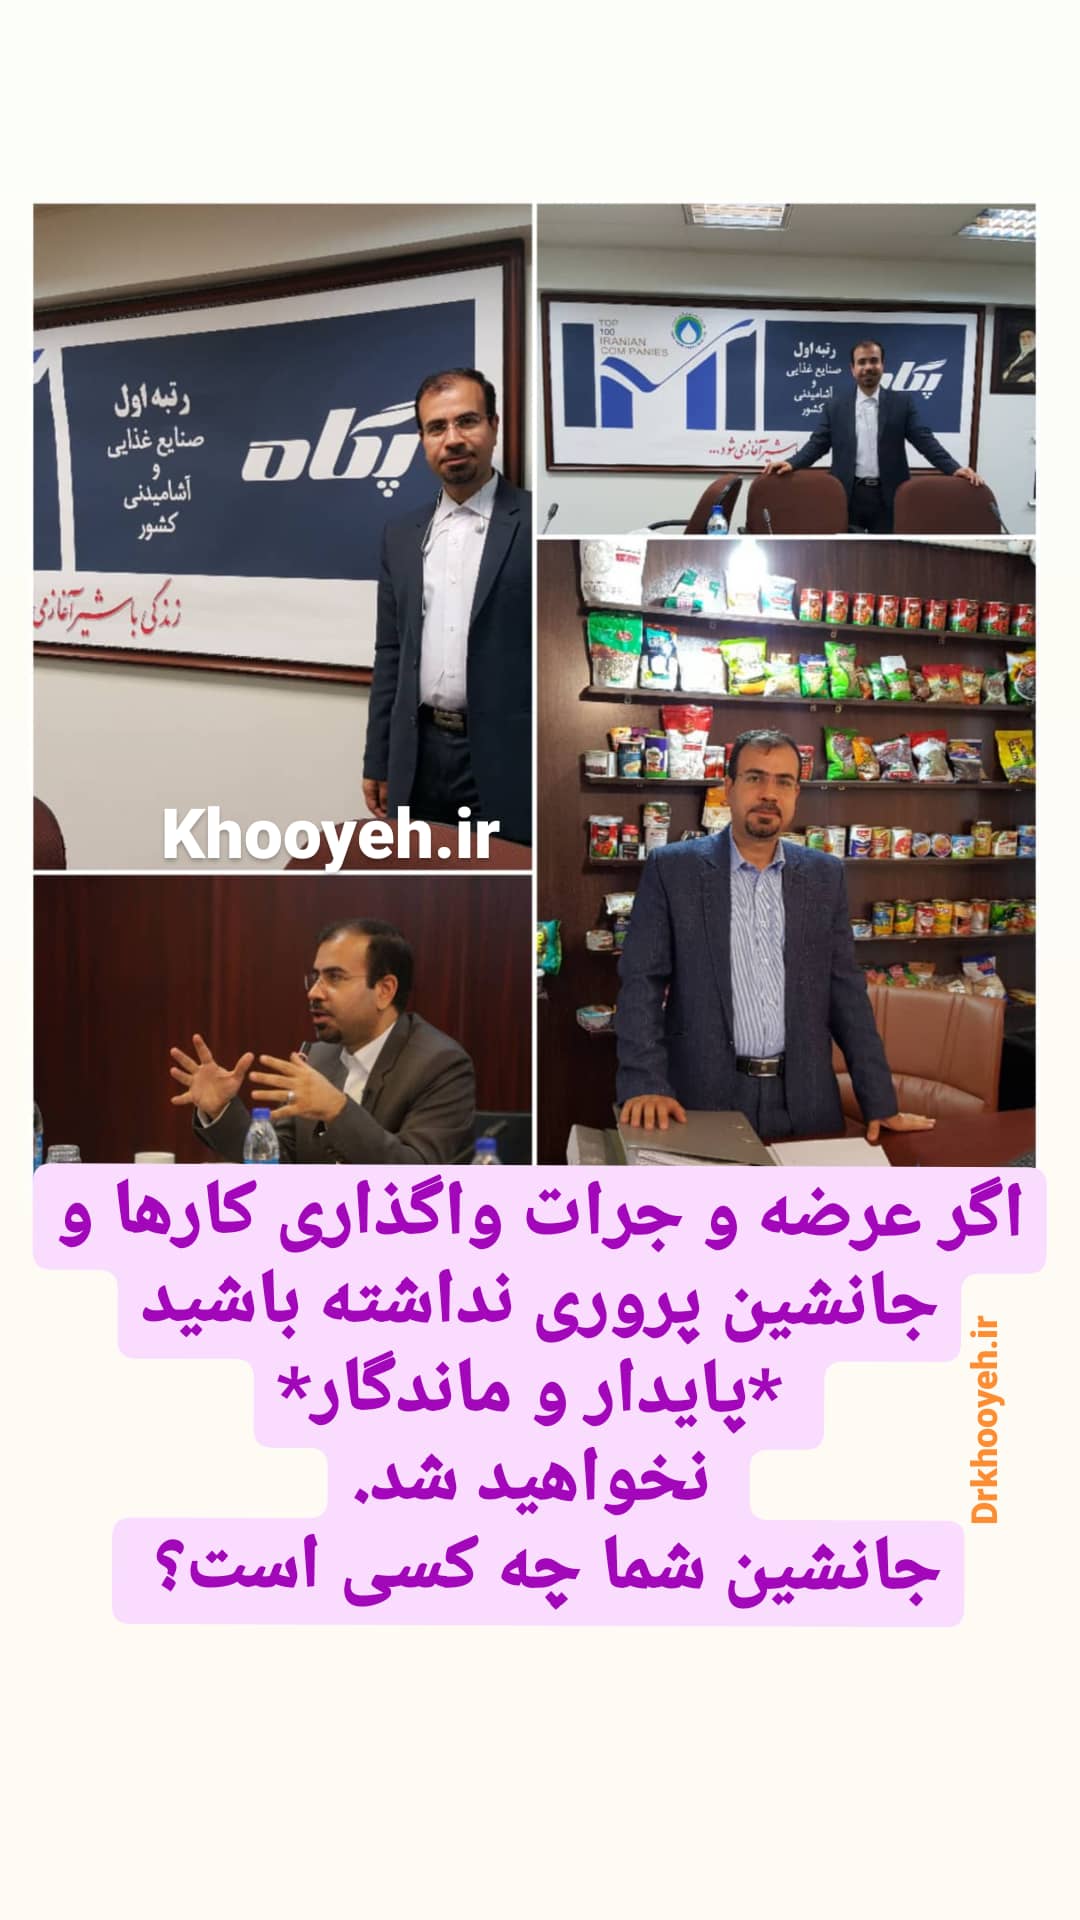 علی خویه مشاور مربی کوچ ومنتور کسب و کار مدیریت فروش بازاریابی برند khooyeh.ir 